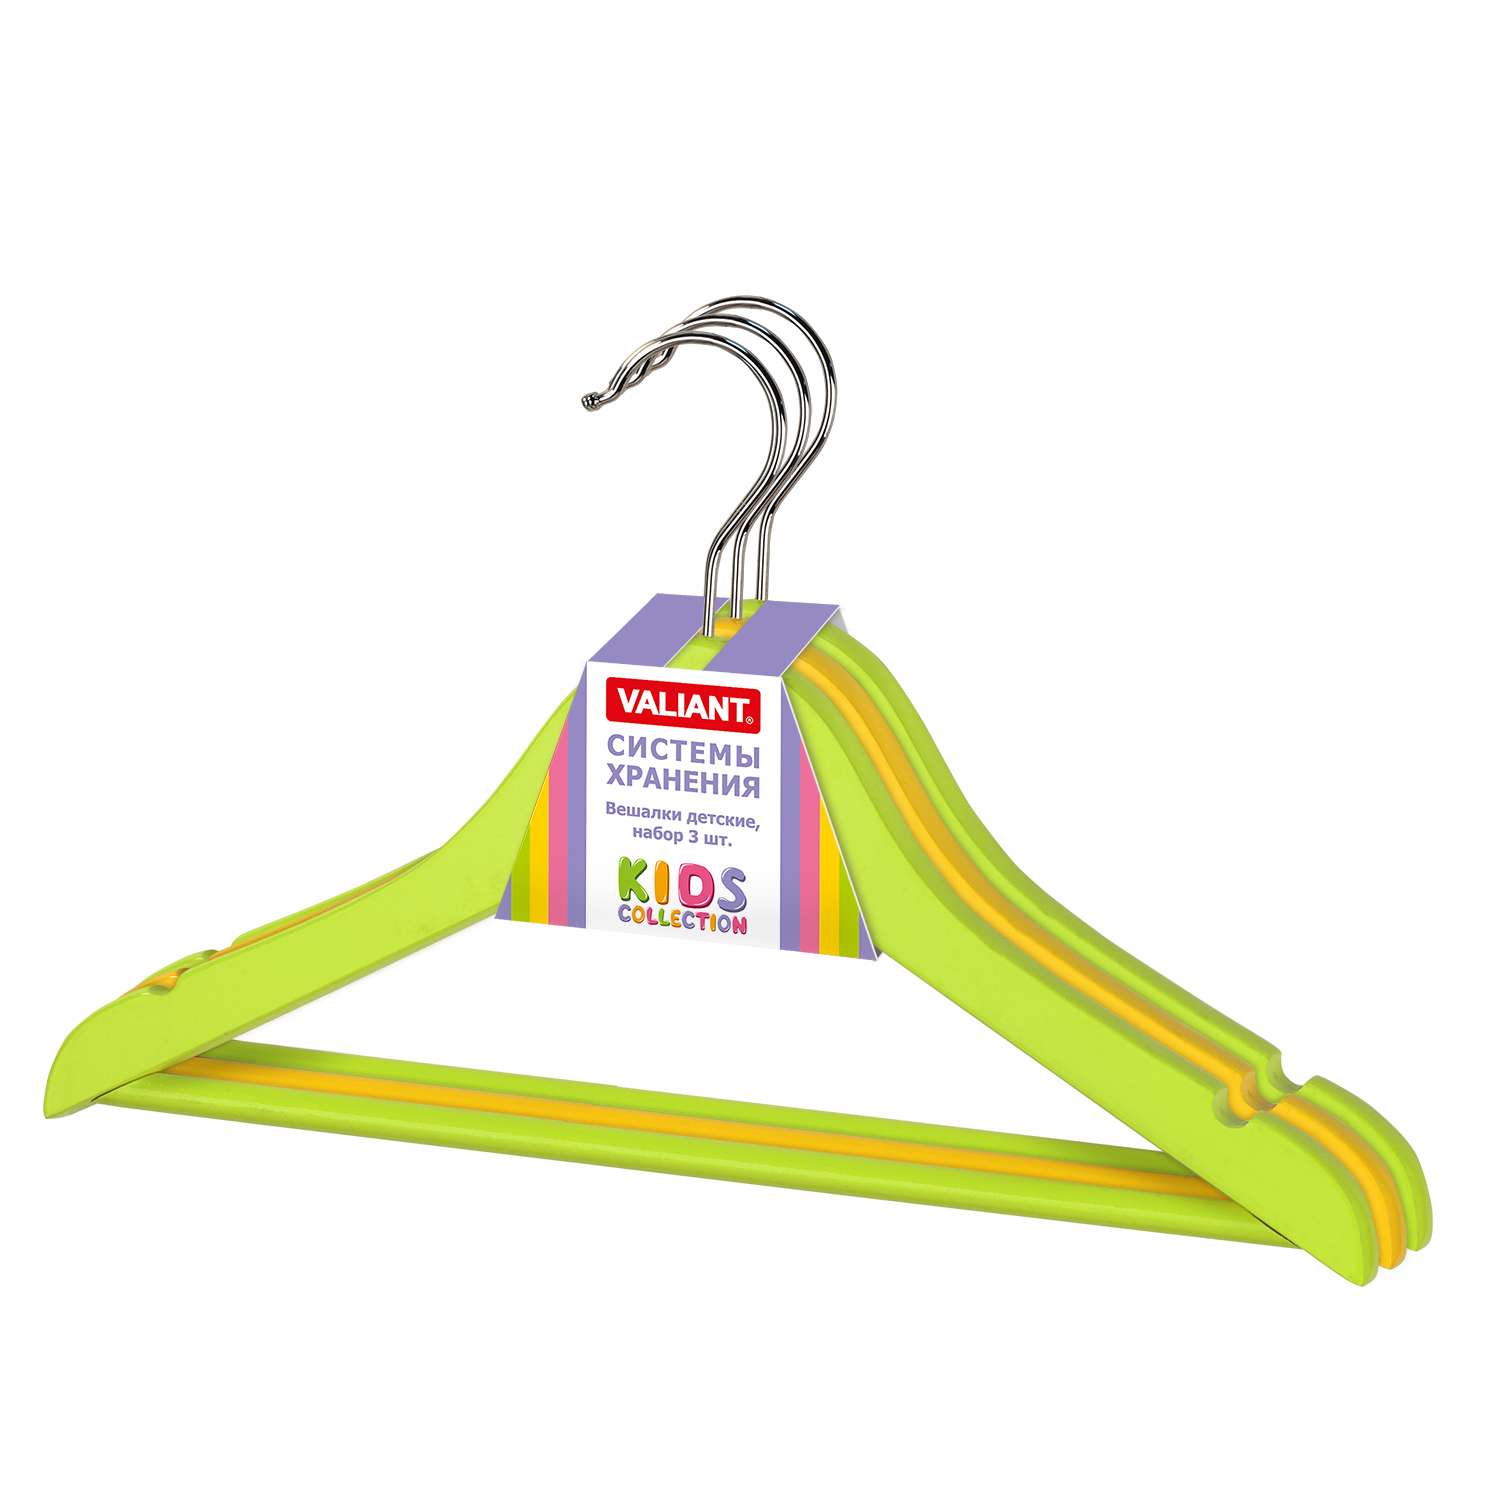 Вешалки-плечики VALIANT для детской одежды деревянные набор 3 шт 35х21х1.2 см зеленый/желтый - фото 3